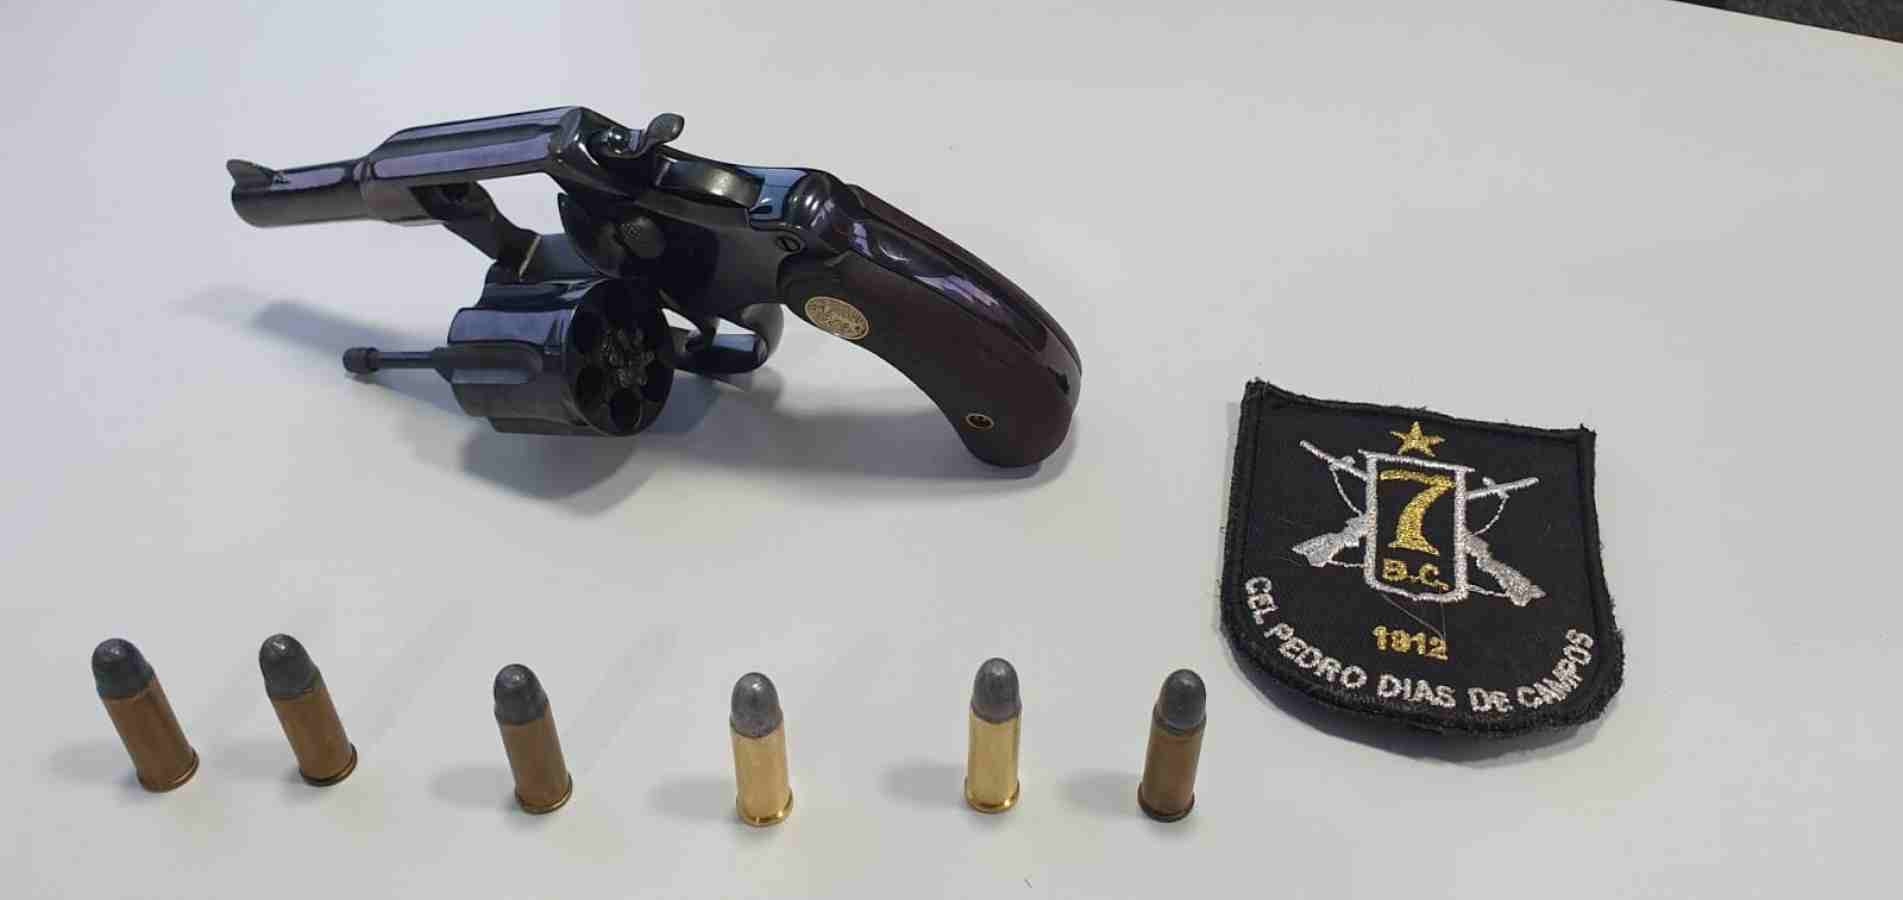 Policiais localizaram uma arma de fogo calibre 32, com seis munições intactas